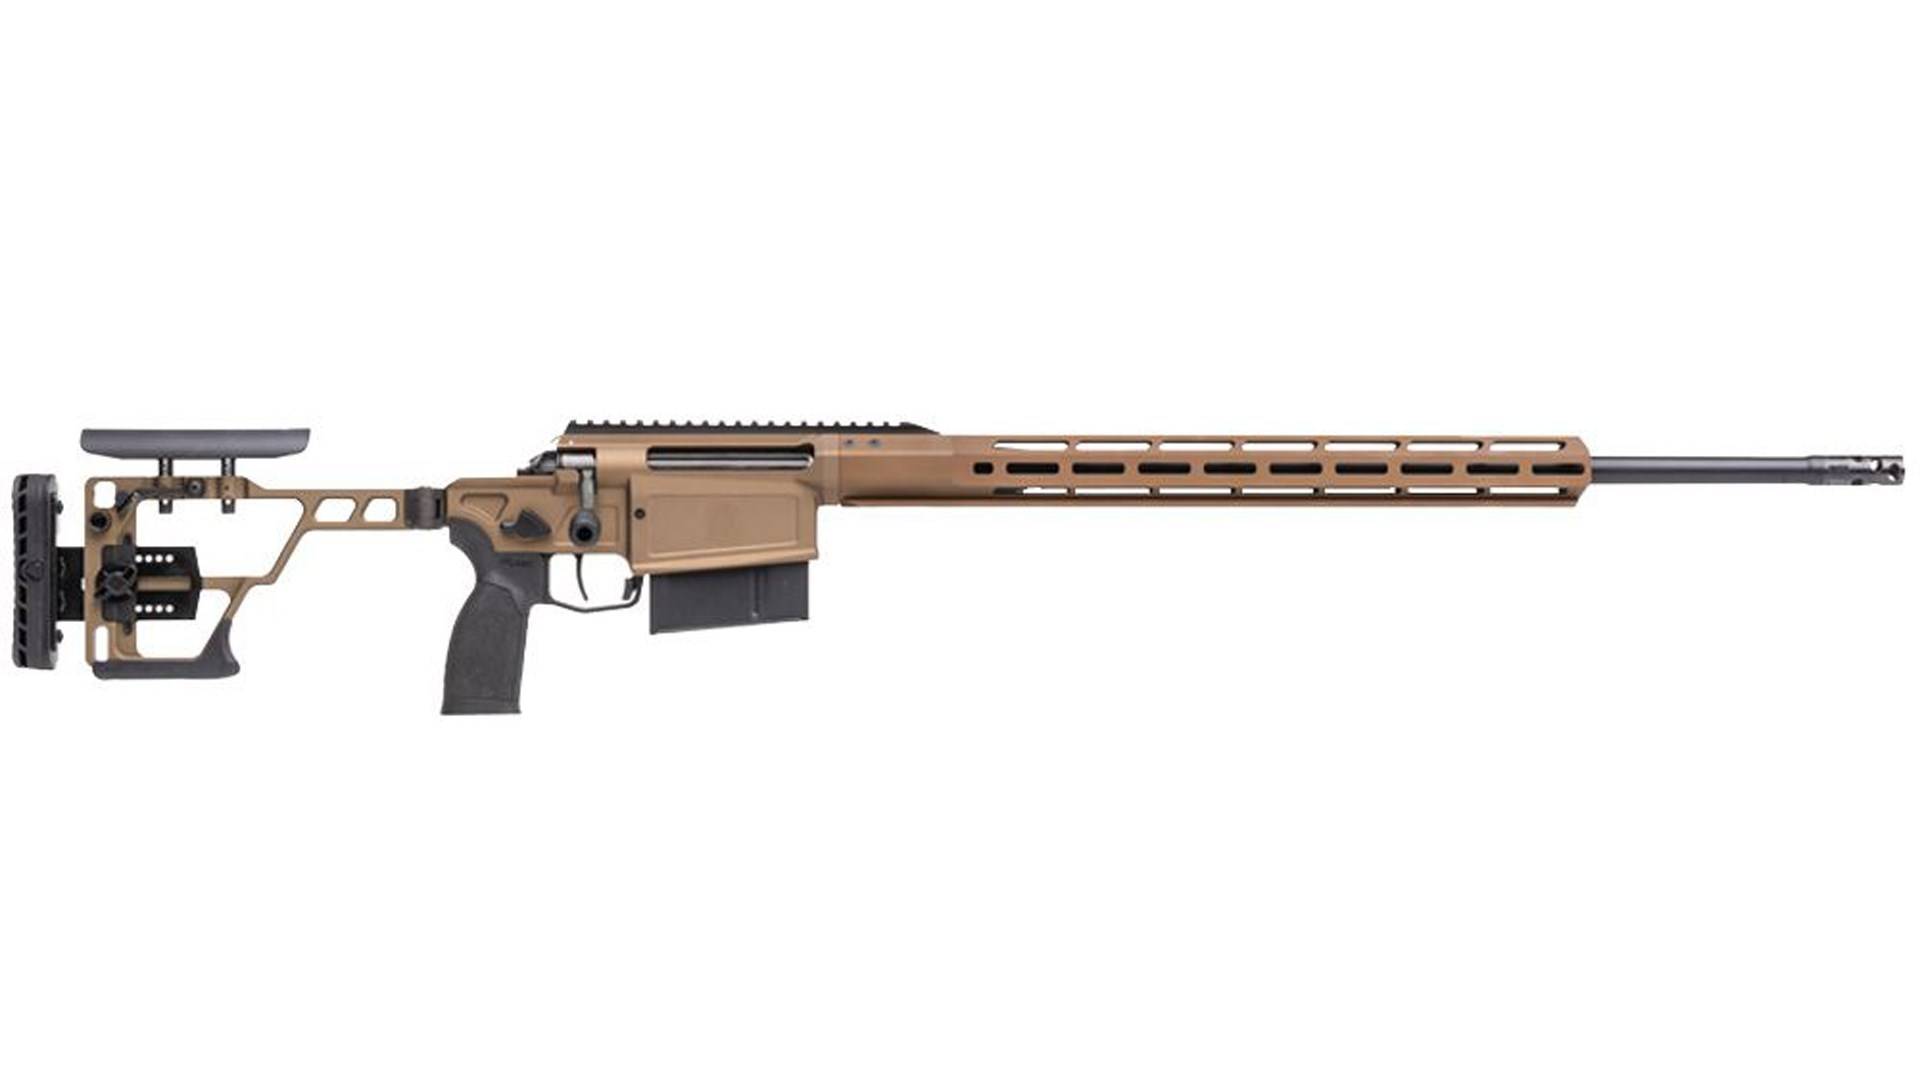 2023 年新品步枪:cross magnum,一款紧凑,轻便的精确狩猎步枪